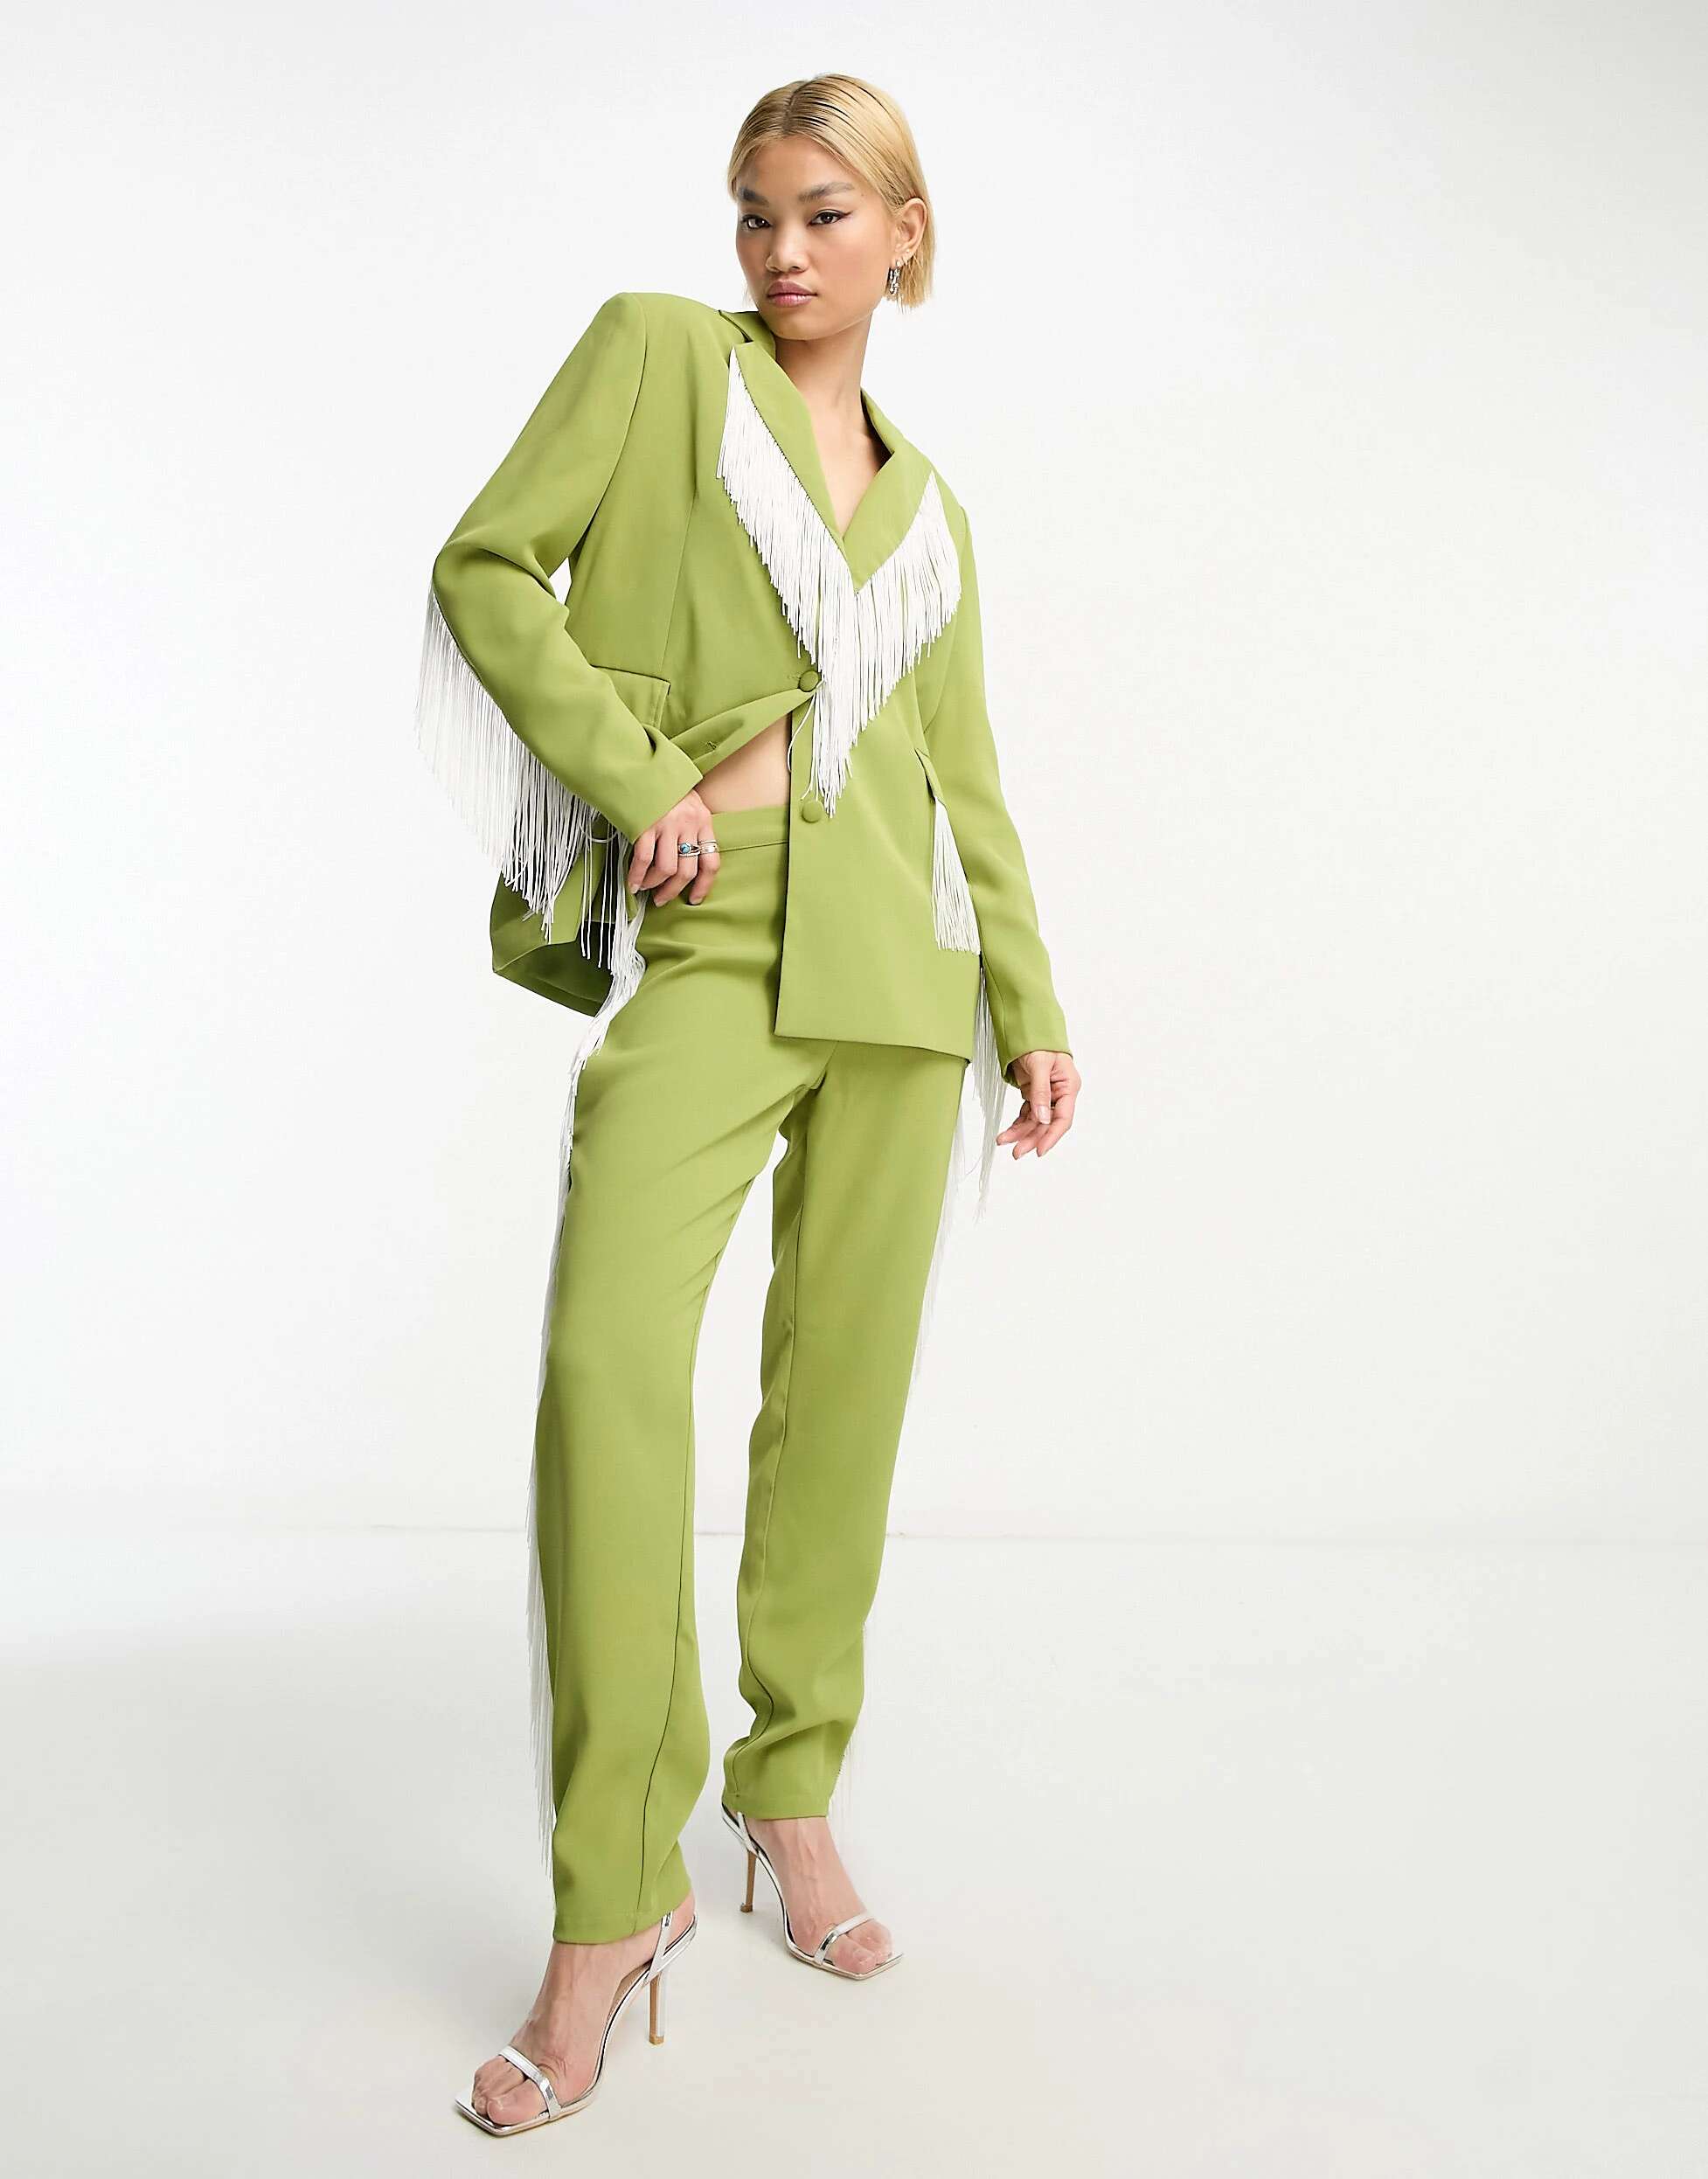 Extro & Vert Прямые брюки премиум-класса с бахромой в зелено-белом сочетании